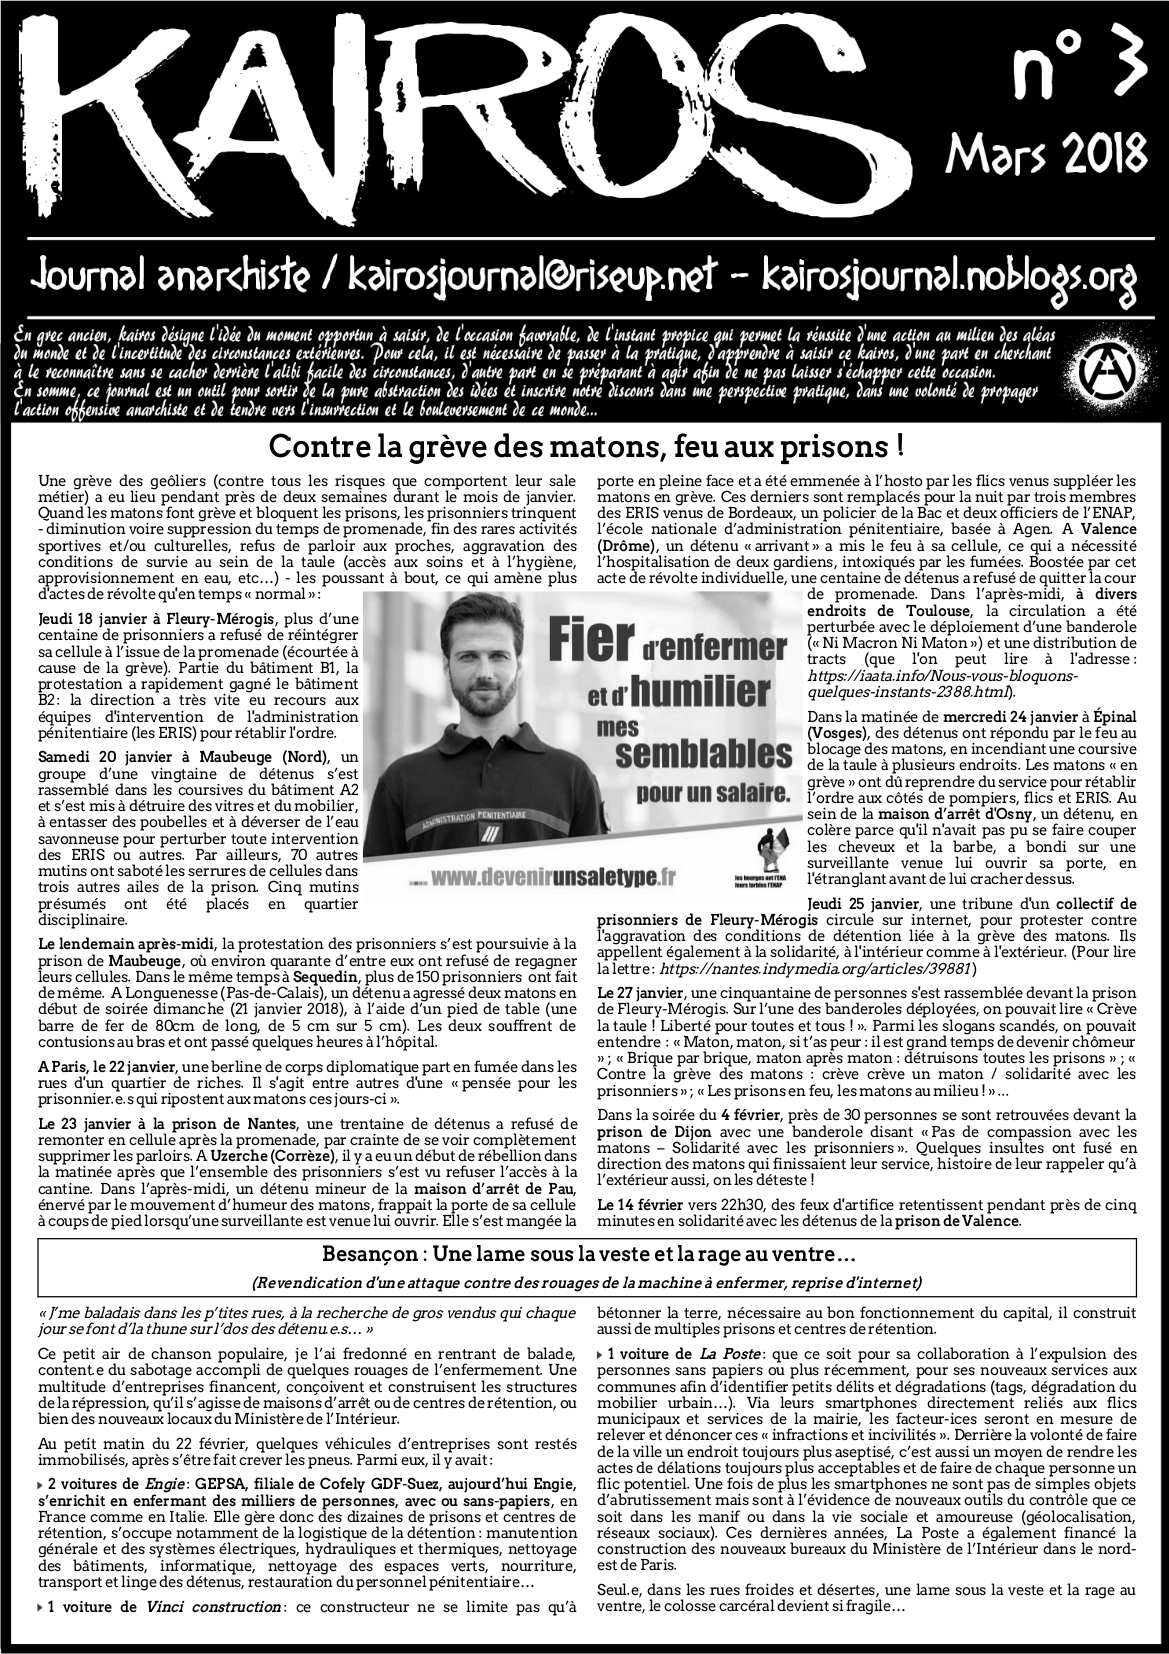 f-u-francia-uscito-n-3-di-kairos-giornale-anarchic-1.png